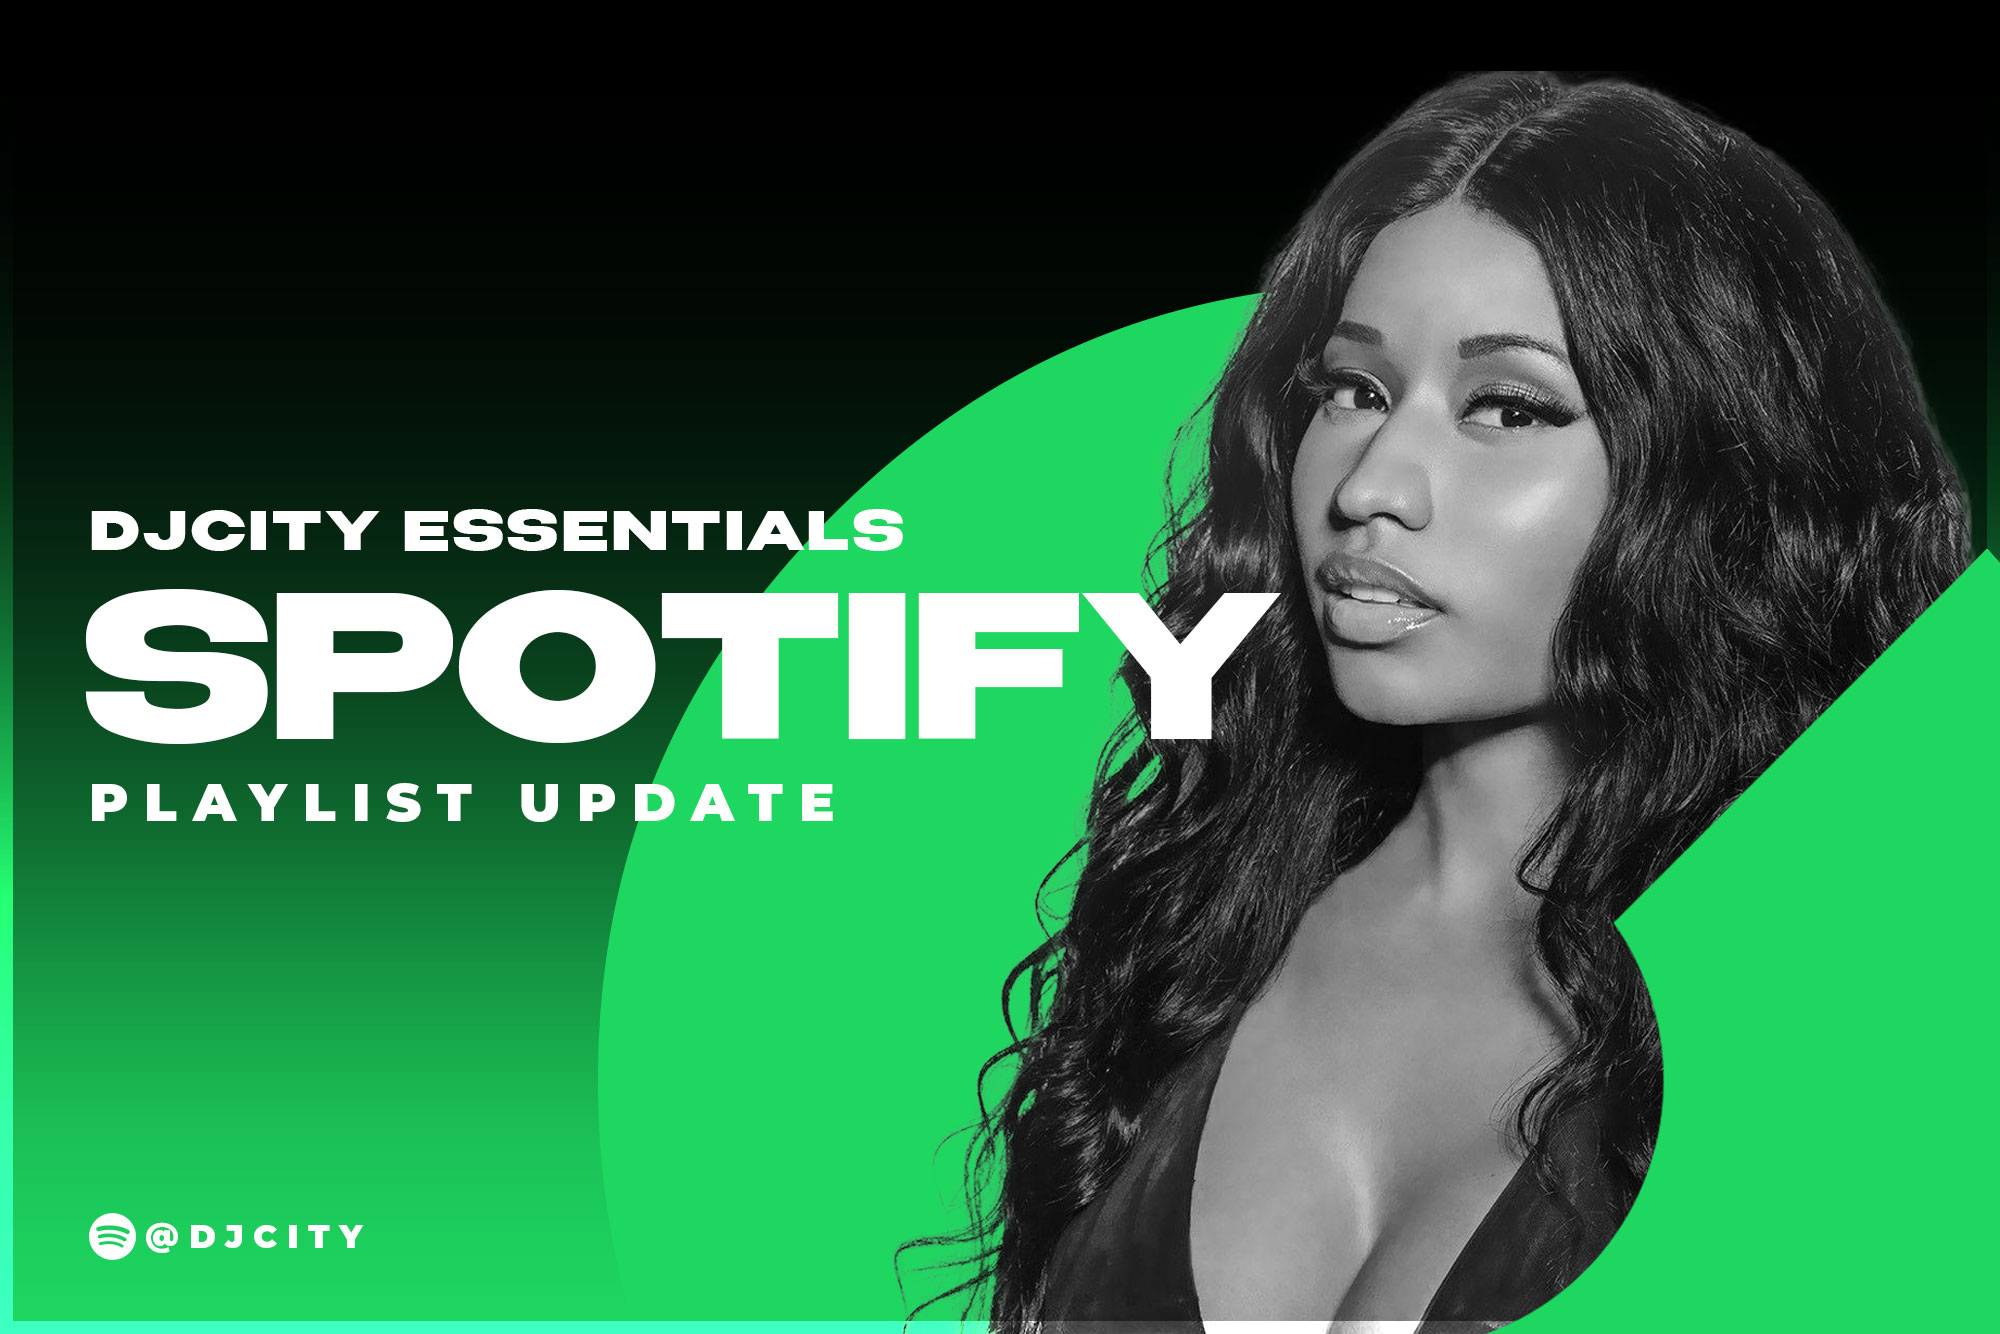 DJcity’s Spotify Playlist Update: May. 18